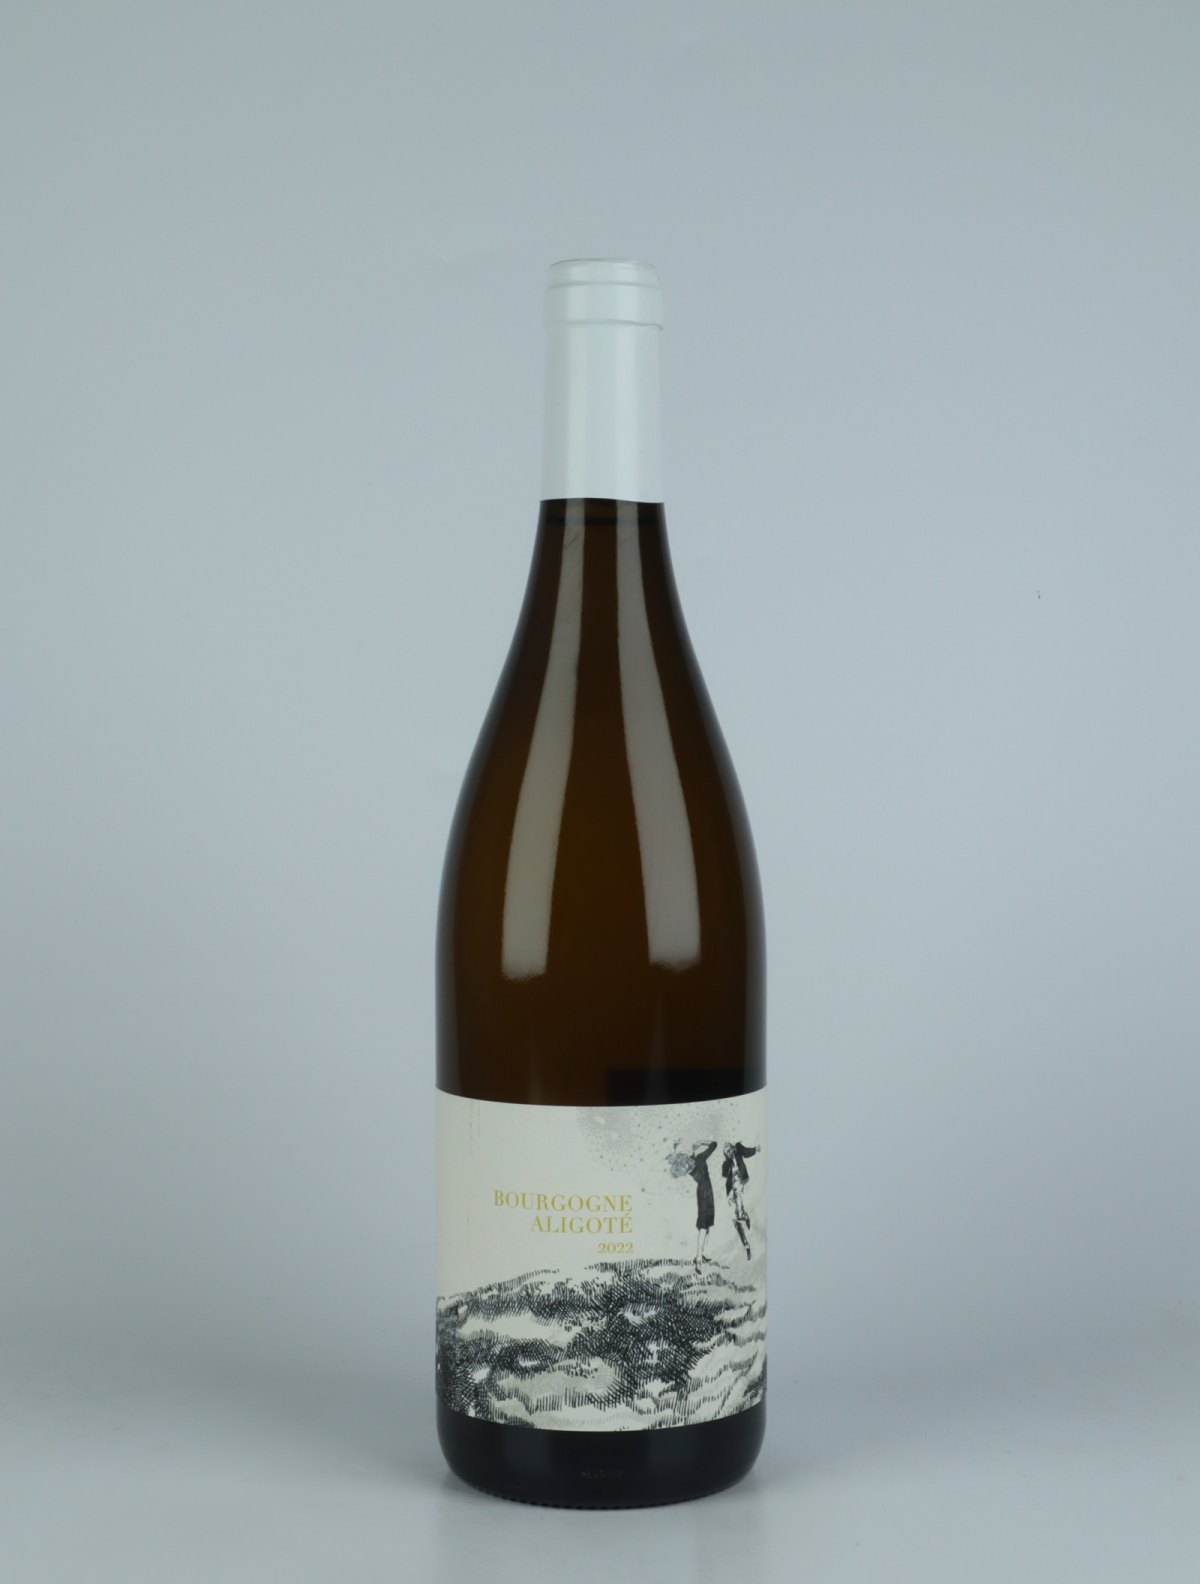 En flaske 2022 Bourgogne Aligoté Hvidvin fra Domaine Didon, Bourgogne i Frankrig